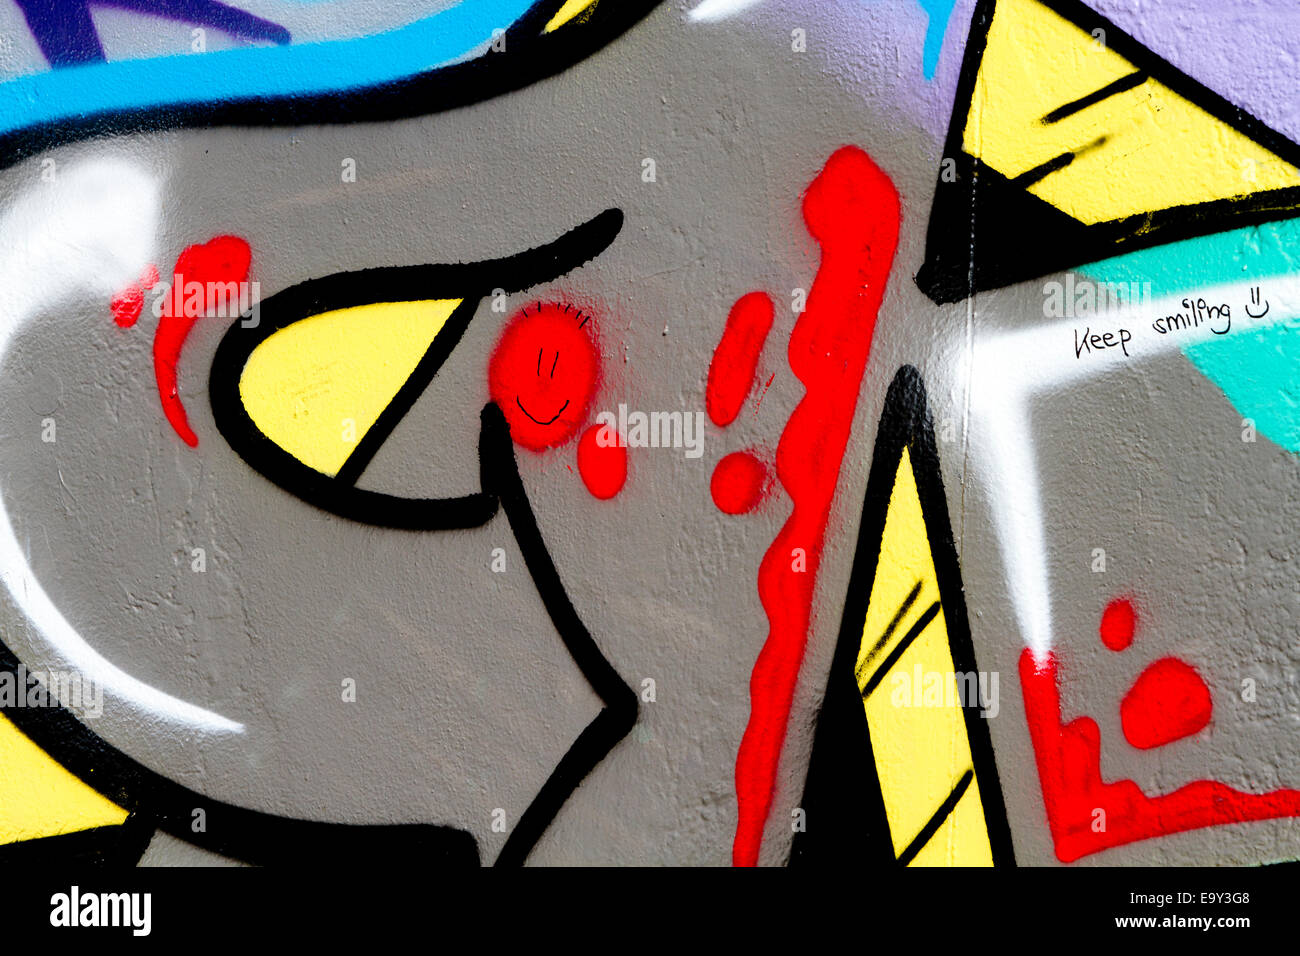 Halten Sie lächelndes Smiley Gesicht Berlin Wall graffiti Stockfoto